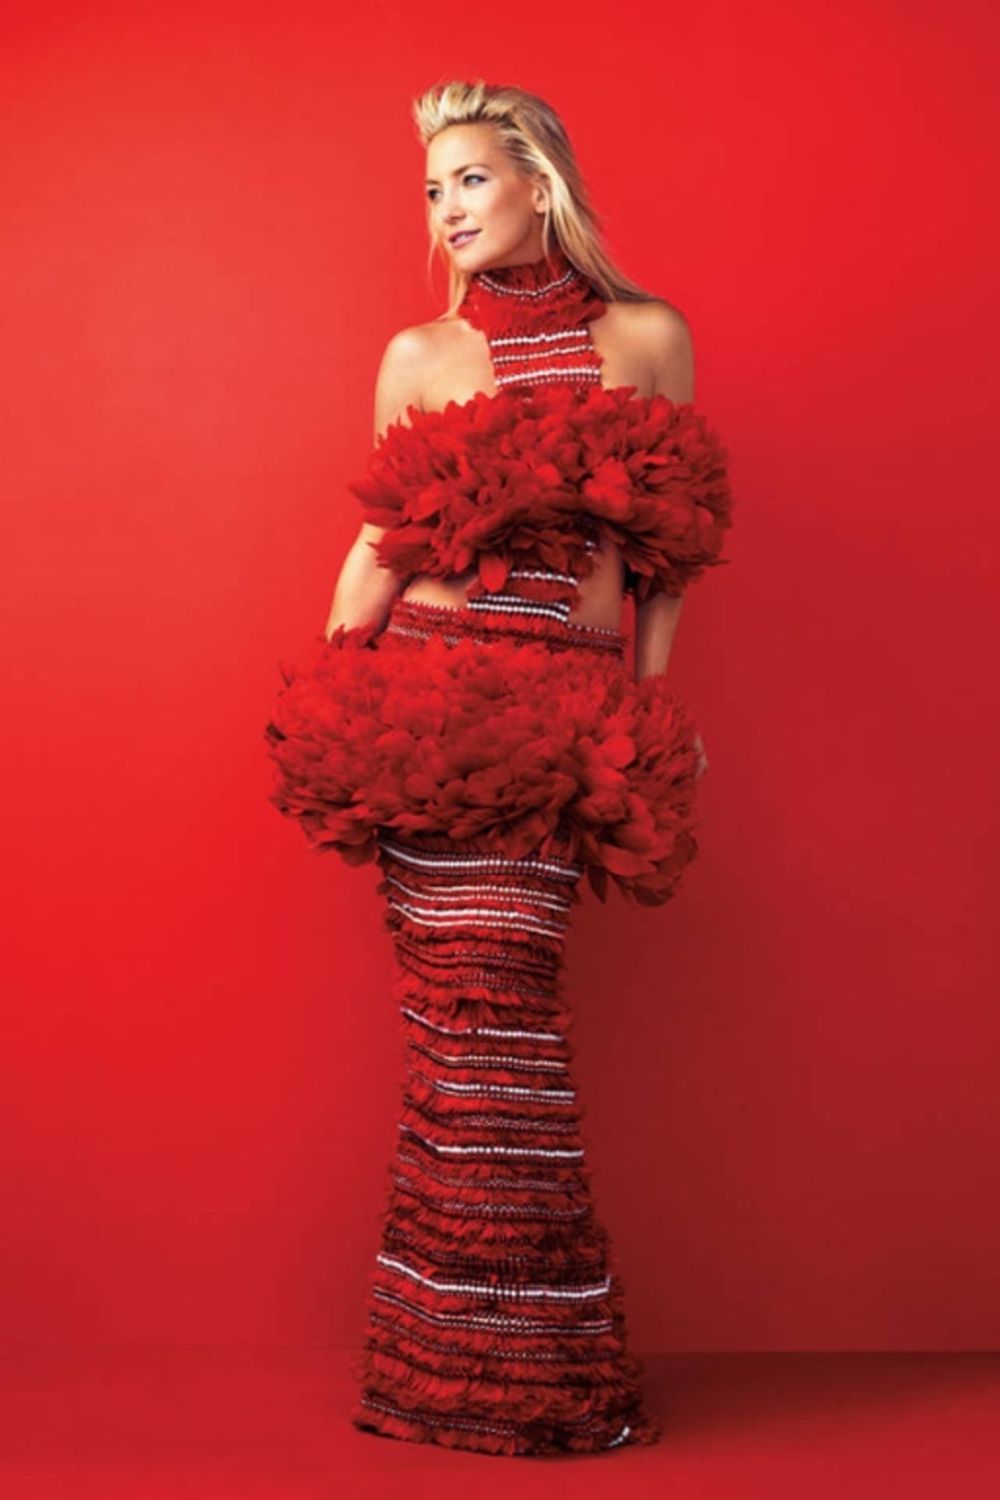 Seksi Kejt Hadson izazovno se smeši sa naslovne strane magazina Harper’s Bazaar. Fotograf je Aleksi Lumborski, za stajling je bila zadužena Džoana Hilman. Glumica je ponela kreacije modnih brendova: Givenchy, Tom Ford, Alexander McQueen i Fendi.